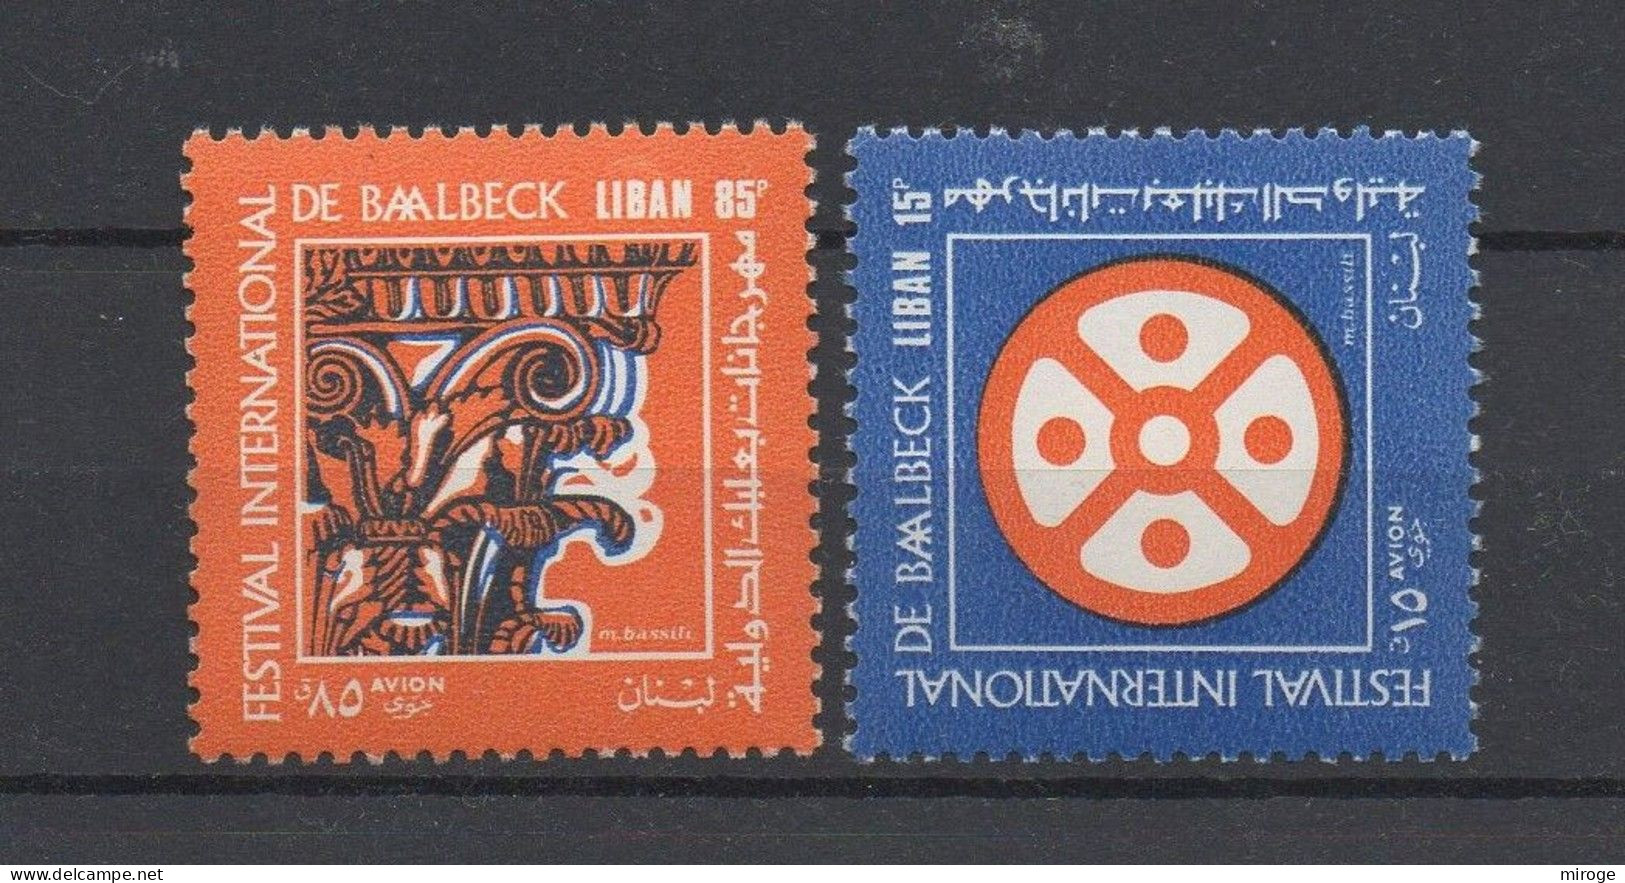 Baalbek International Festival 1971 MNH Lebanon Stamps Liban Libano - Lebanon